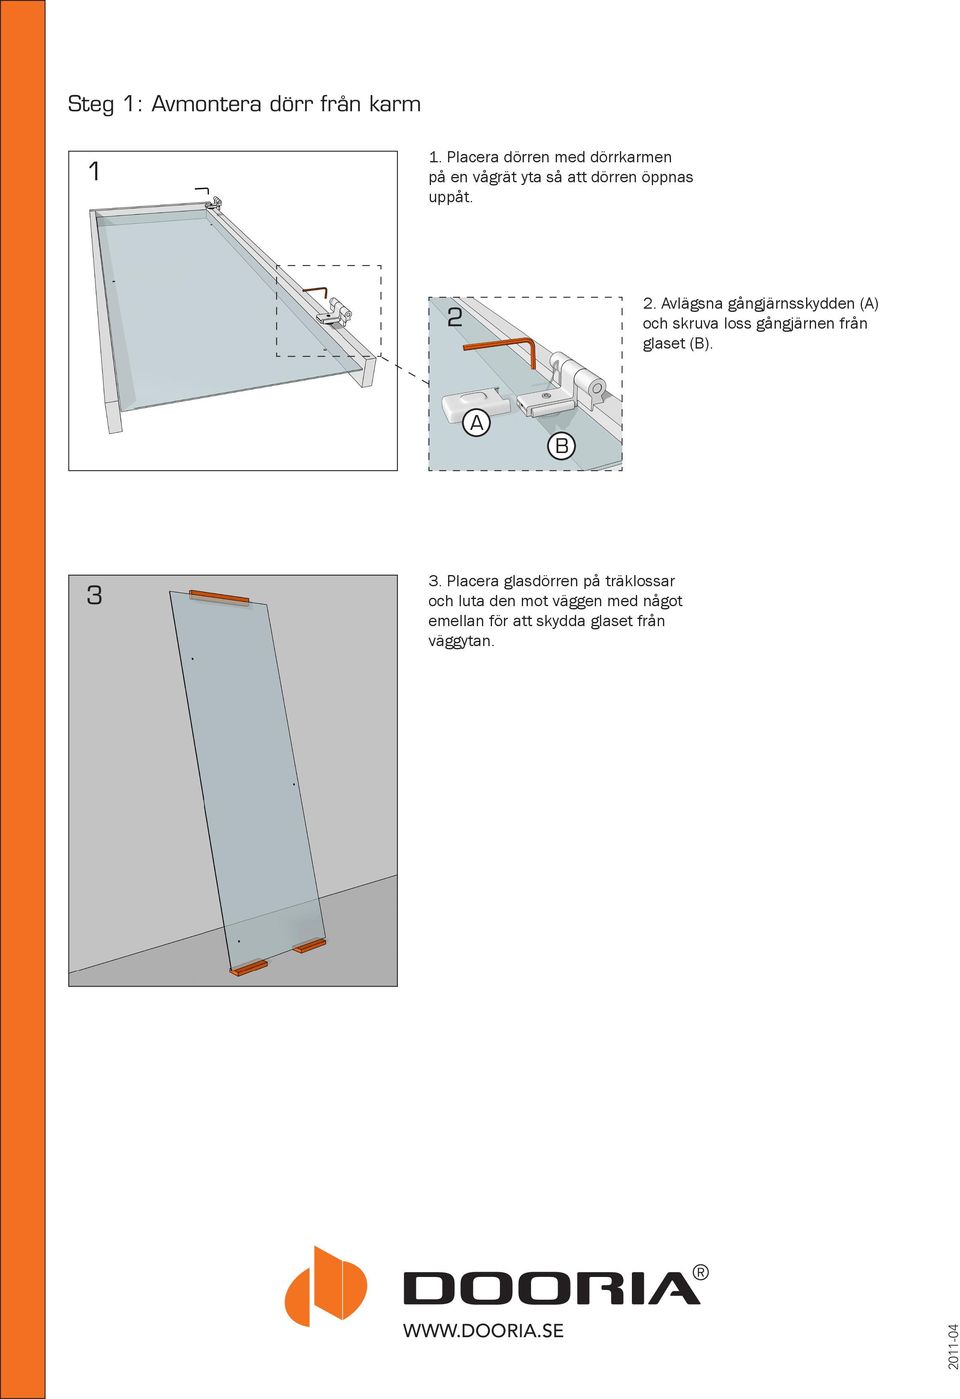 2 2. Avlägsna gångjärnsskydden (A) och skruva loss gångjärnen från glaset (B).